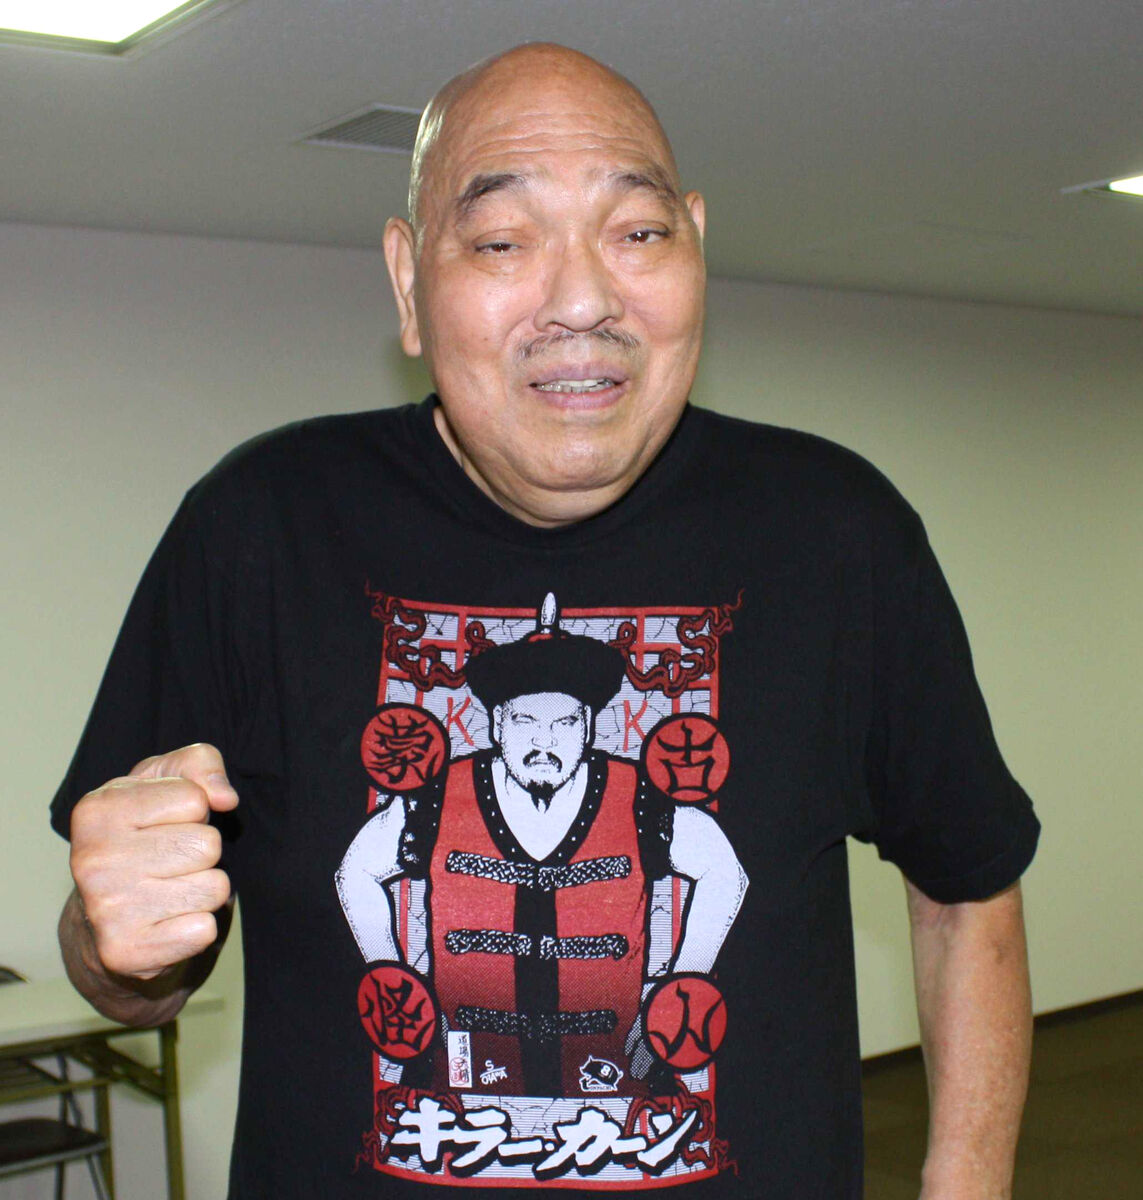 Der Profi-Wrestler mit bürgerlichem Namen Masashi Ozawa starb Berichten zufolge an einem Arterienriss